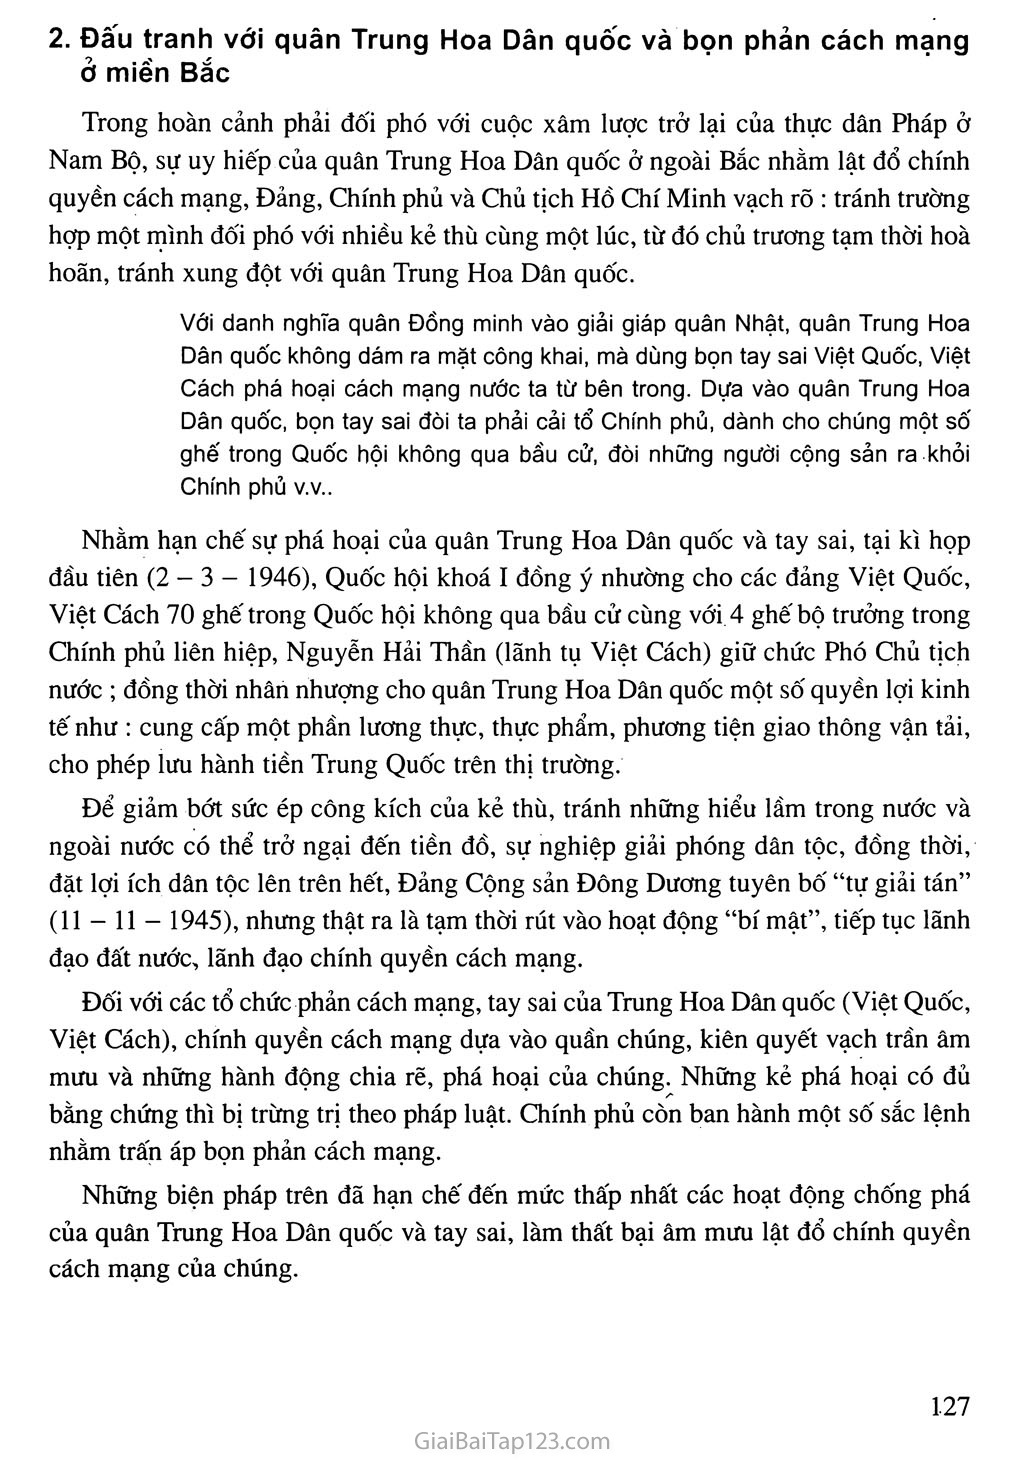 Bài 17. Nước Việt Nam Dân chủ Cộng hoà từ sau ngày 2-9-1945 đến trước ngày 19 - 12 - 1946 trang 7